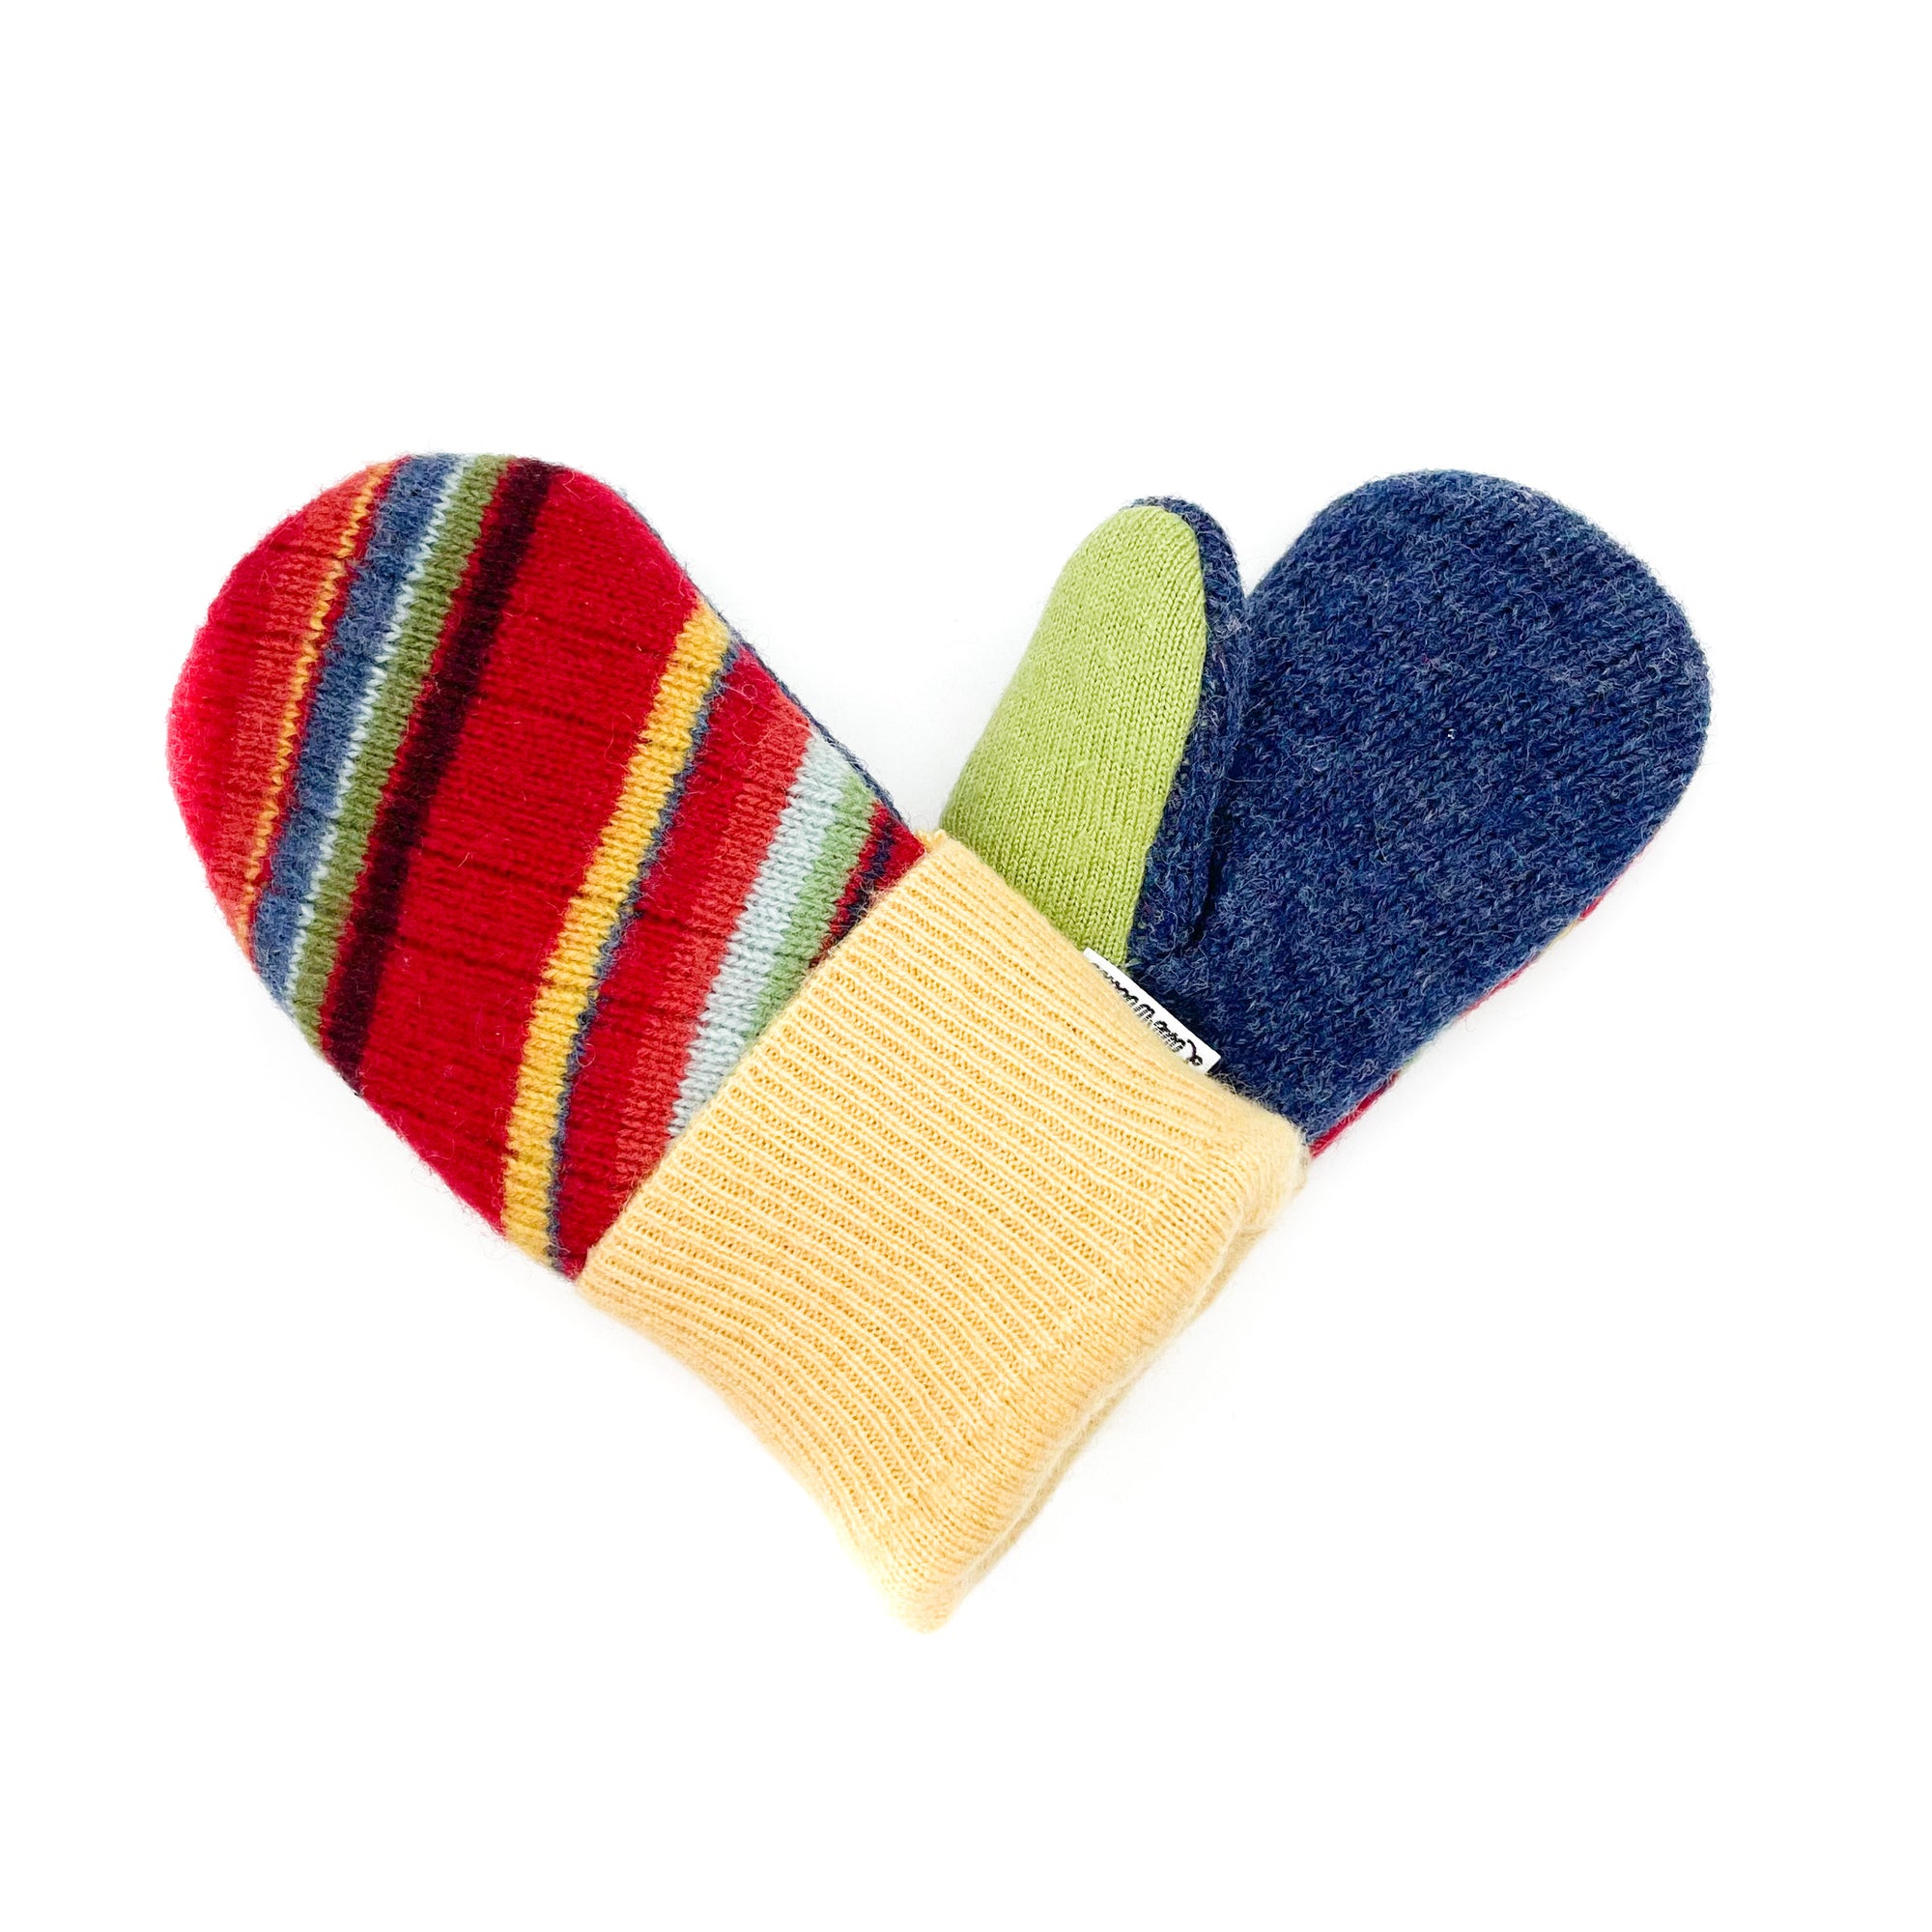 Small Kid's Wool Sweater Mittens | Playground